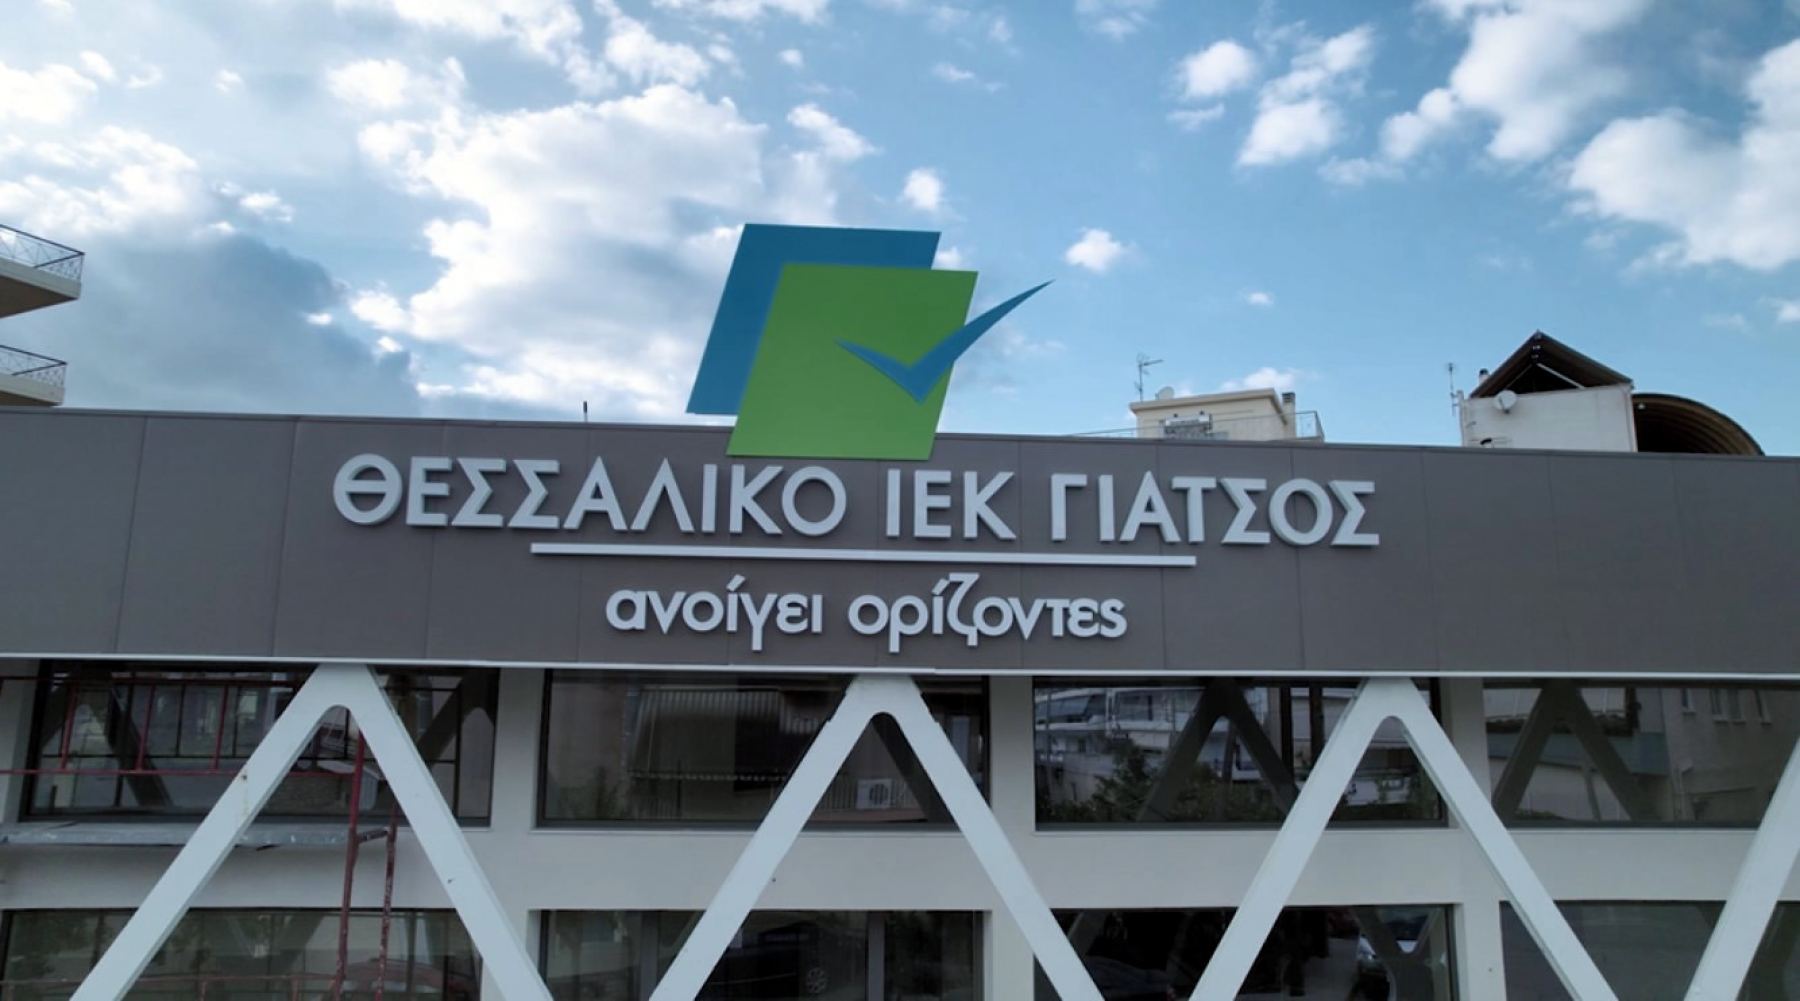 Λαμία: Έτοιμες οι νέες εγκαταστάσεις στο Θεσσαλικό ΙΕΚ Γιάτσος!